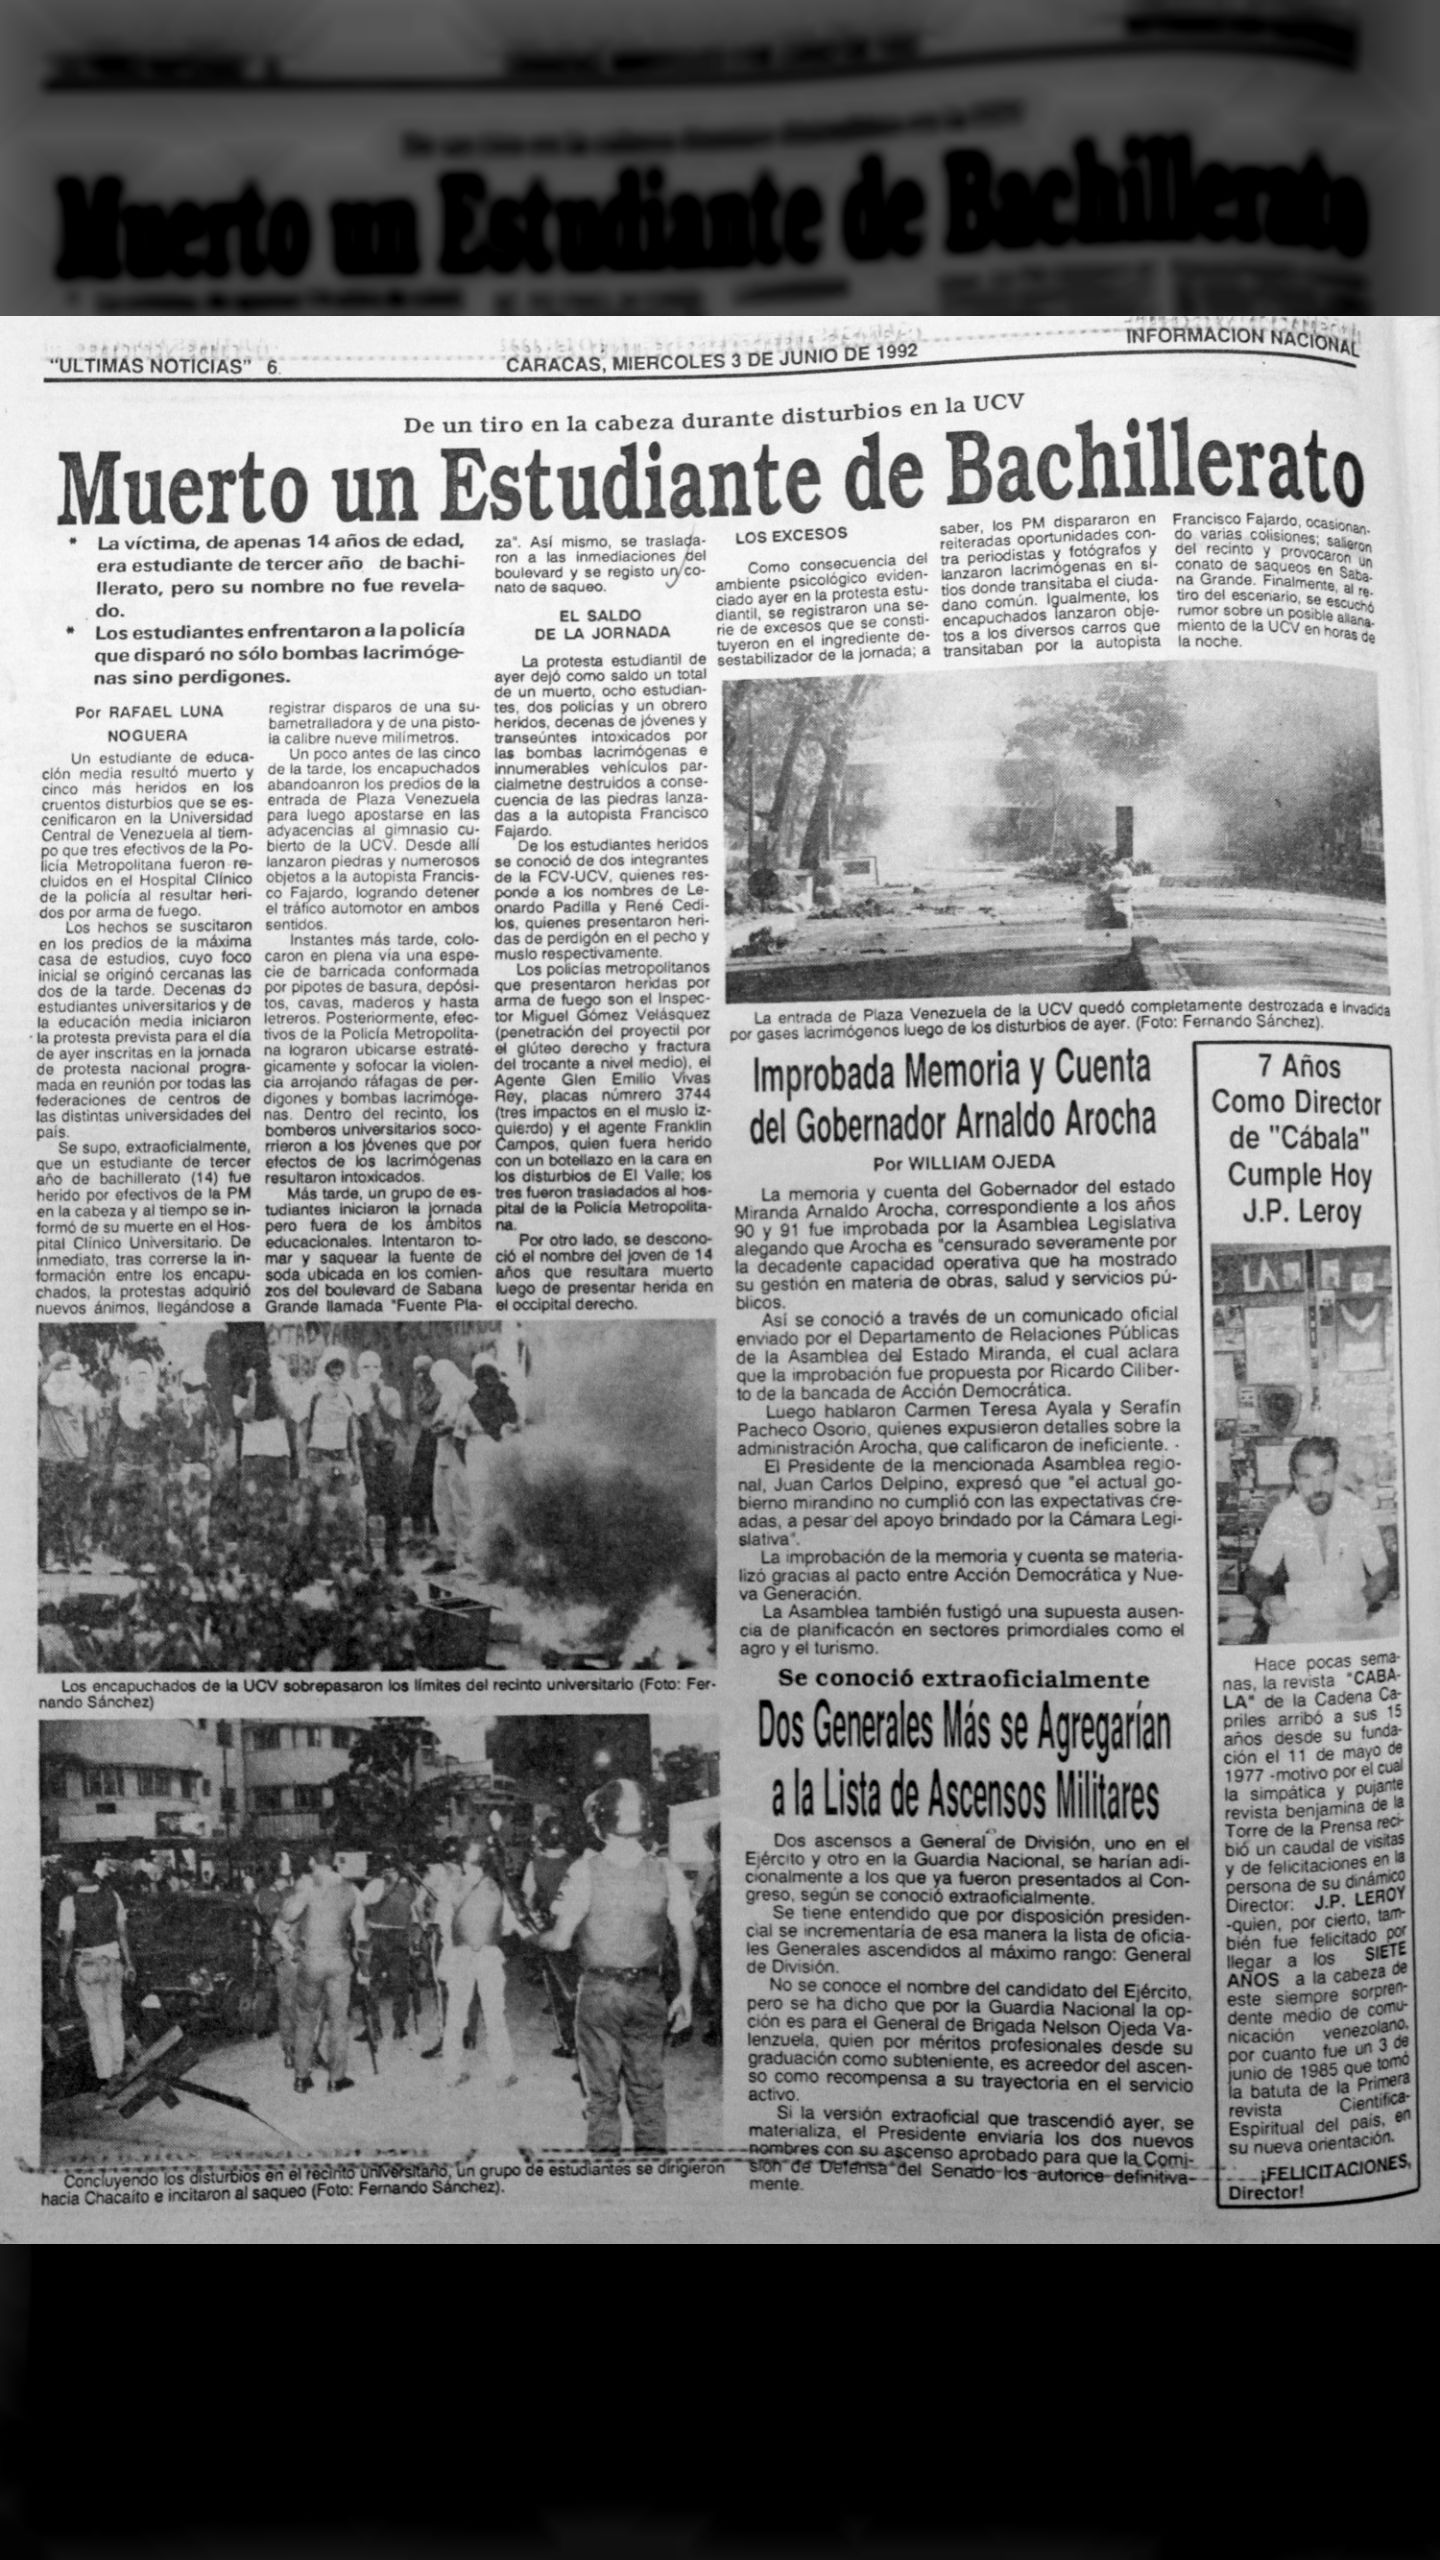 Muerto un estudiante de bachillerato de un tiro en la cabeza durante disturbios en la UCV (Últimas Noticias, 3 de junio de 1992)